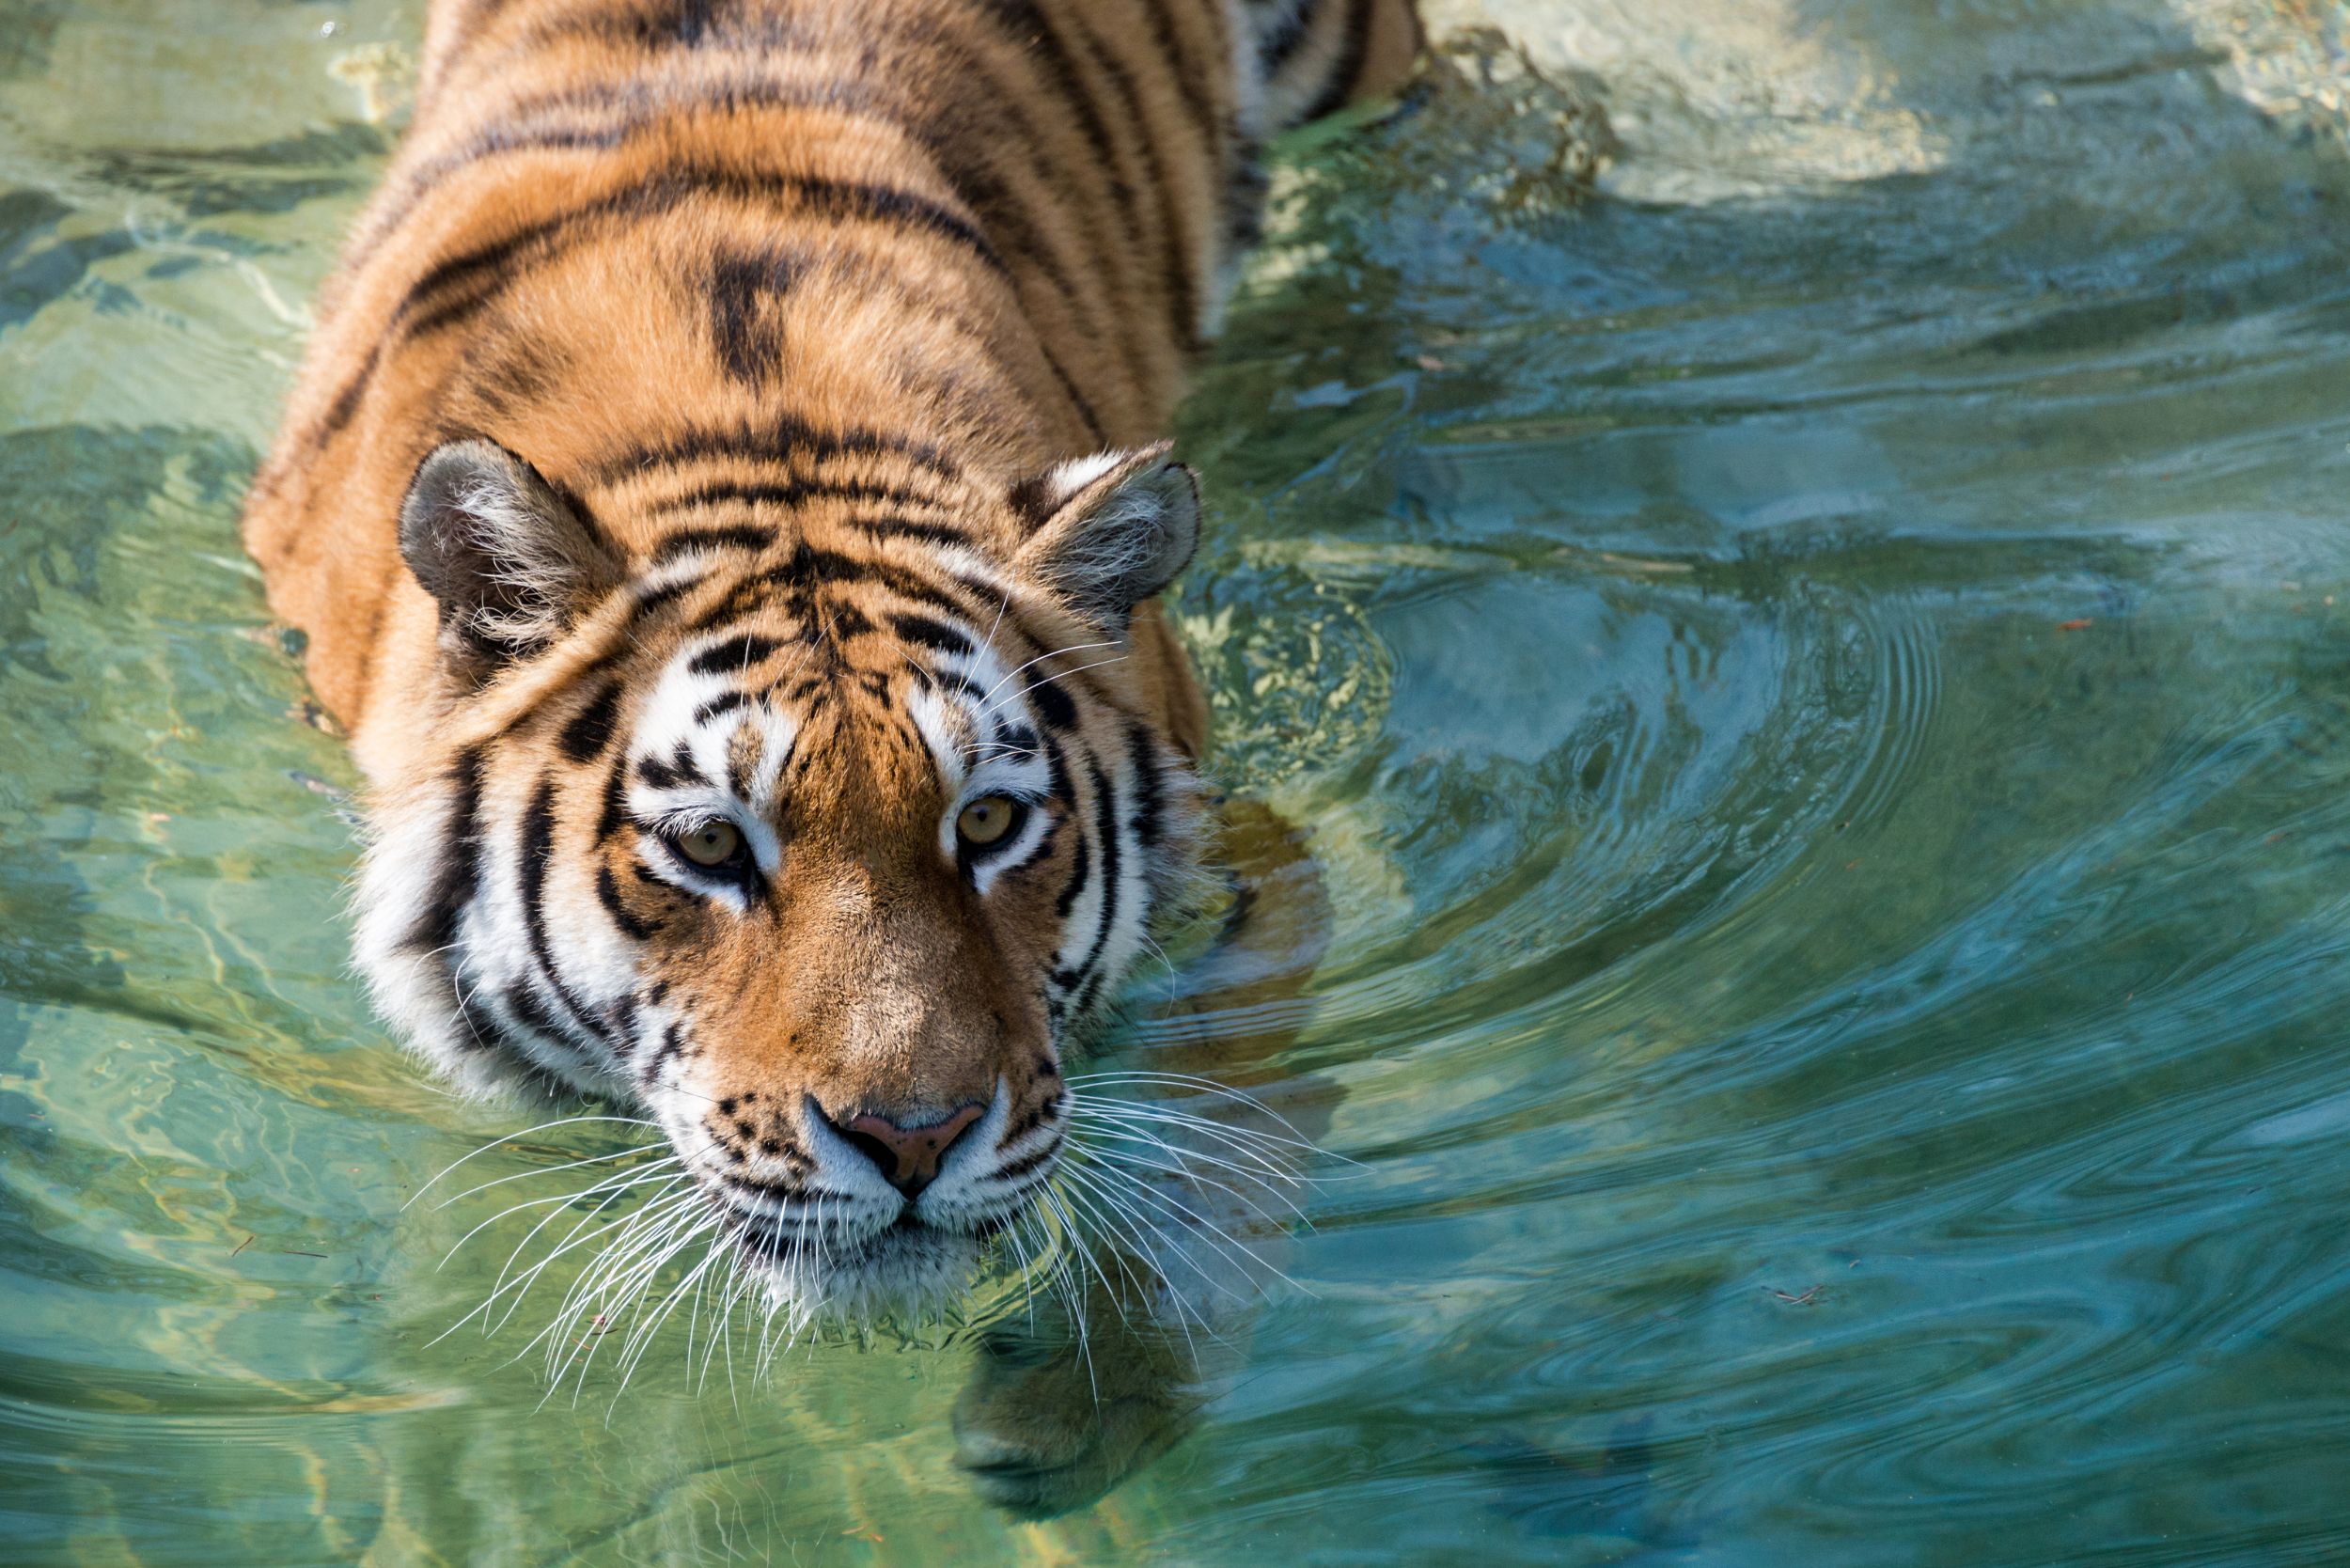 Tigre nadando en la naturaleza.